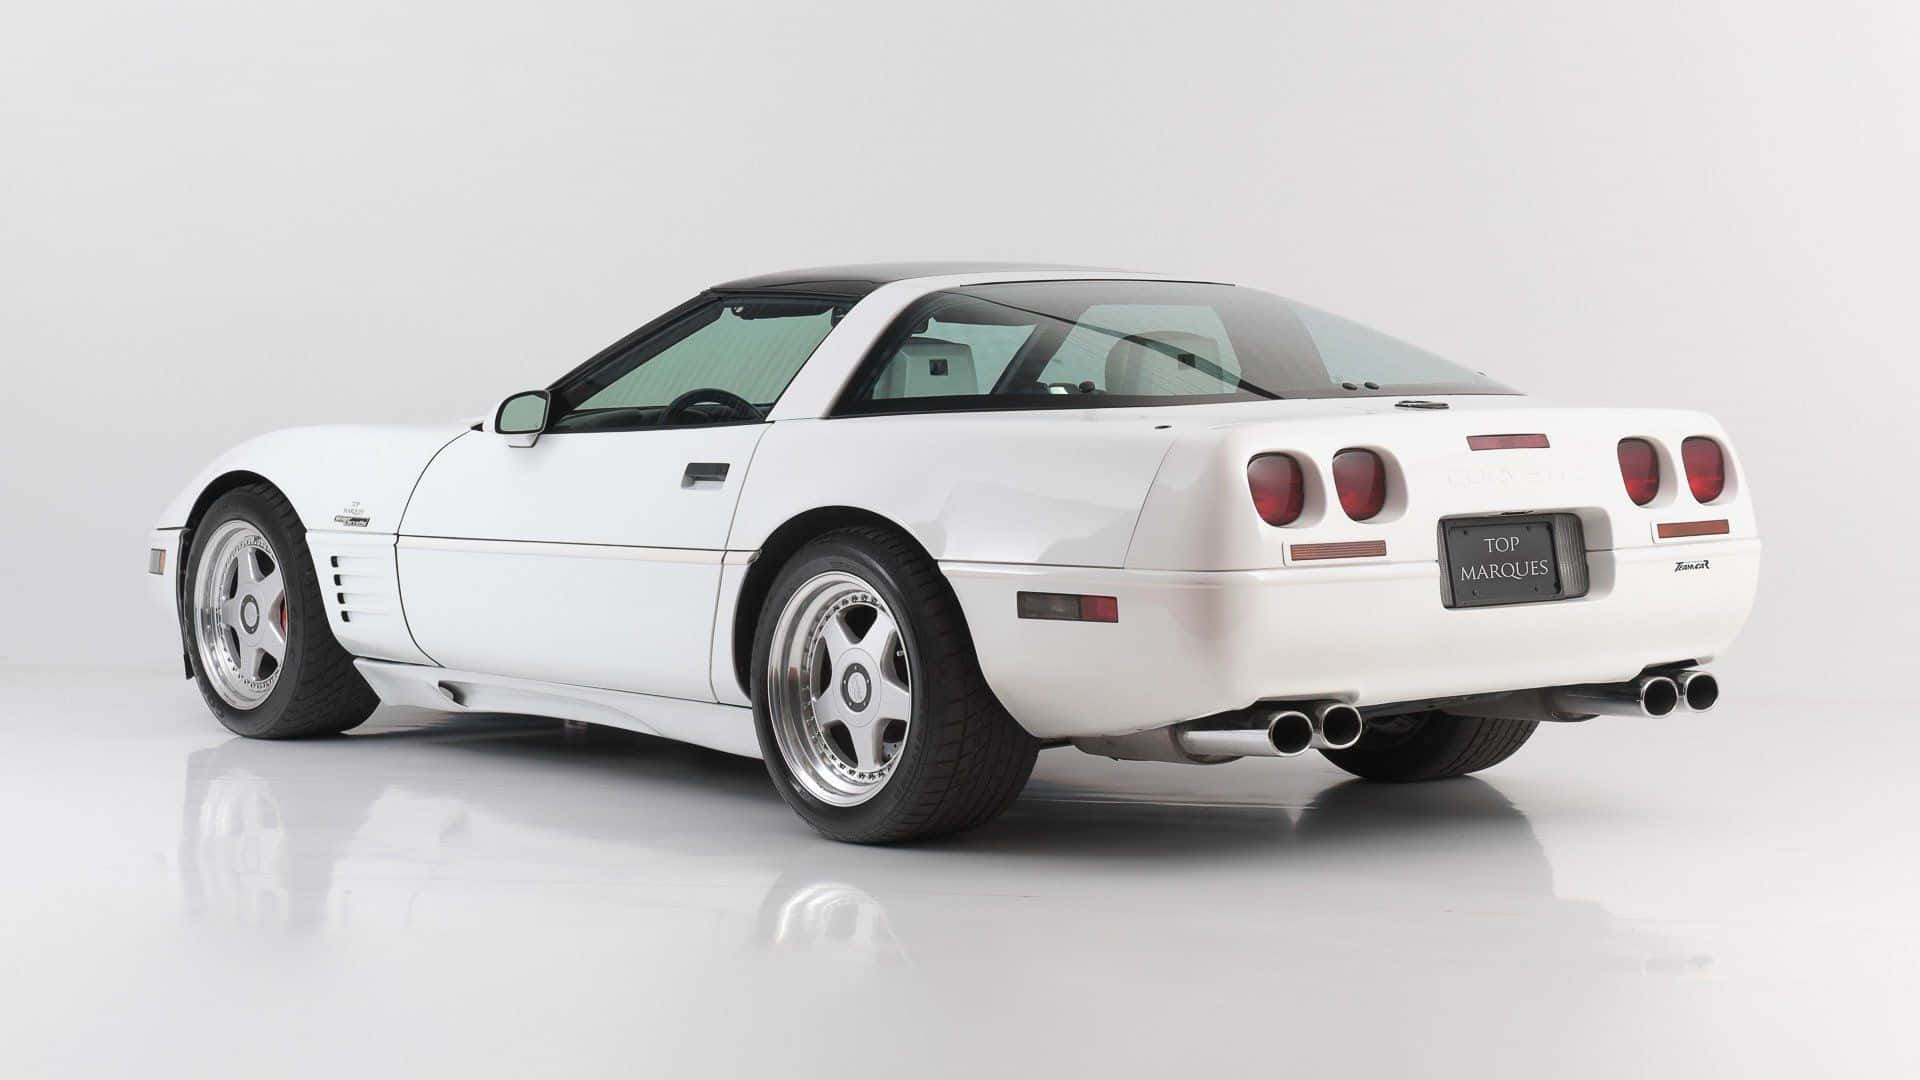 Imágenesdel C4 Corvette